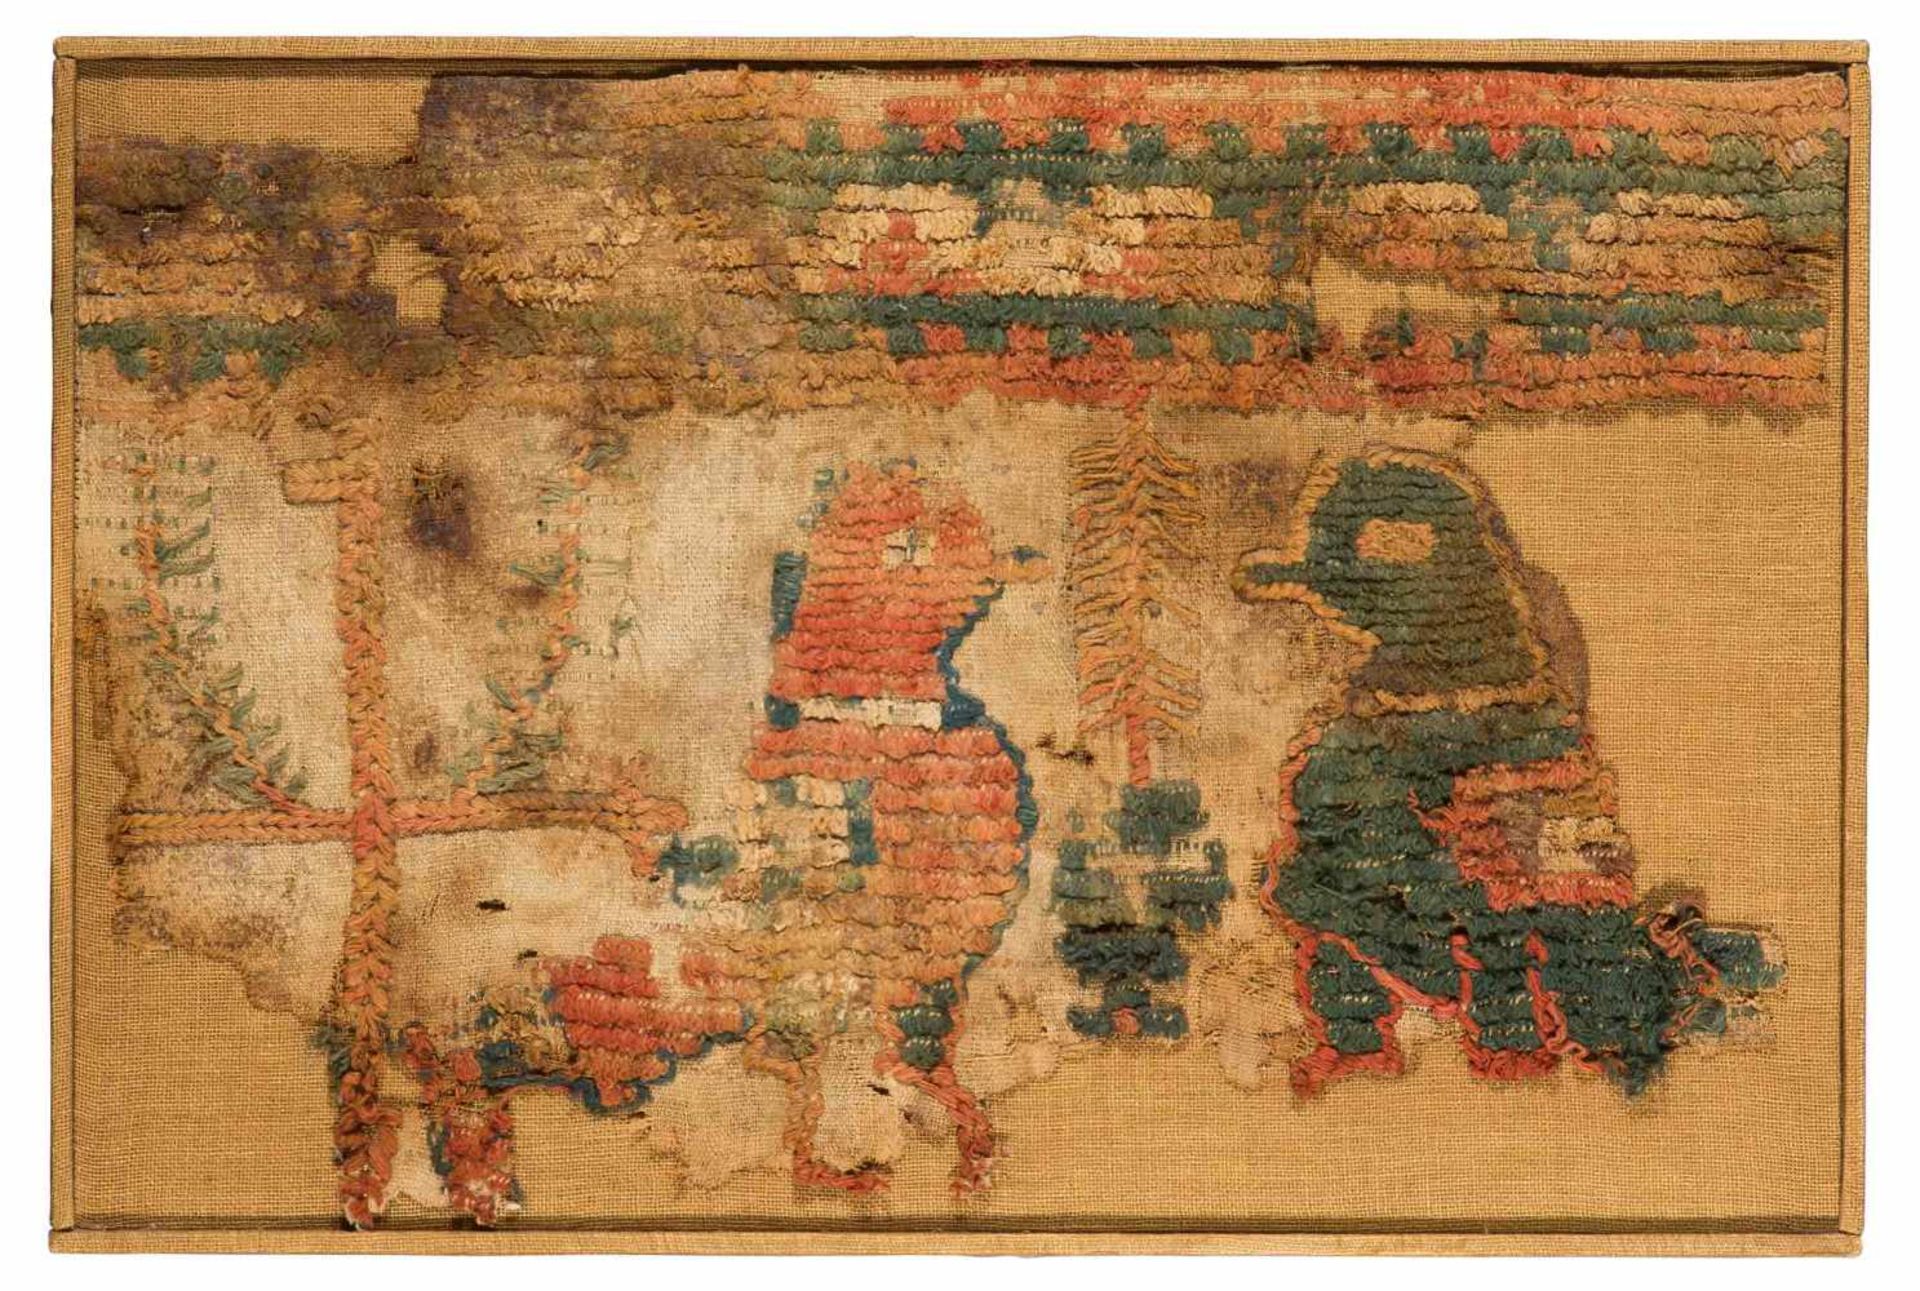 Koptisches Textilfragment